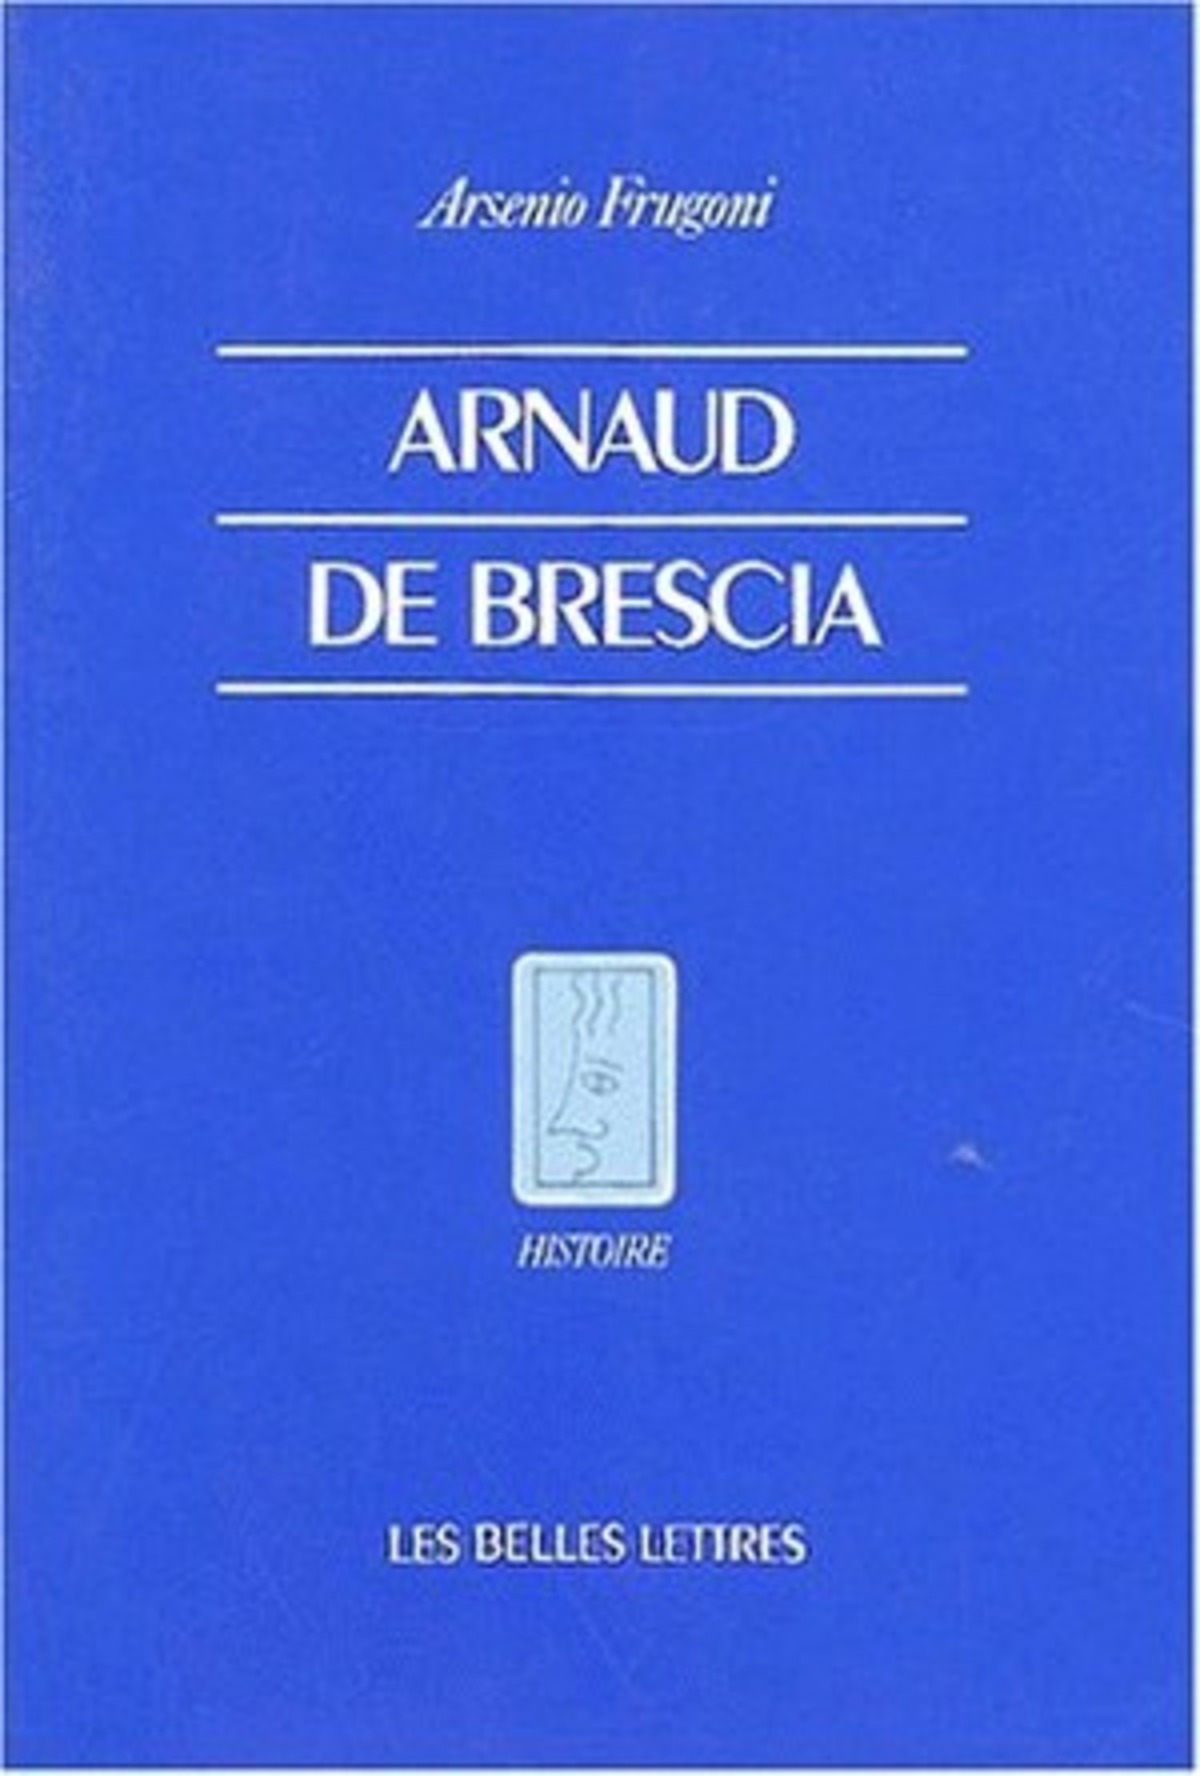 Arnaud de Brescia dans les sources du XIIe siècle